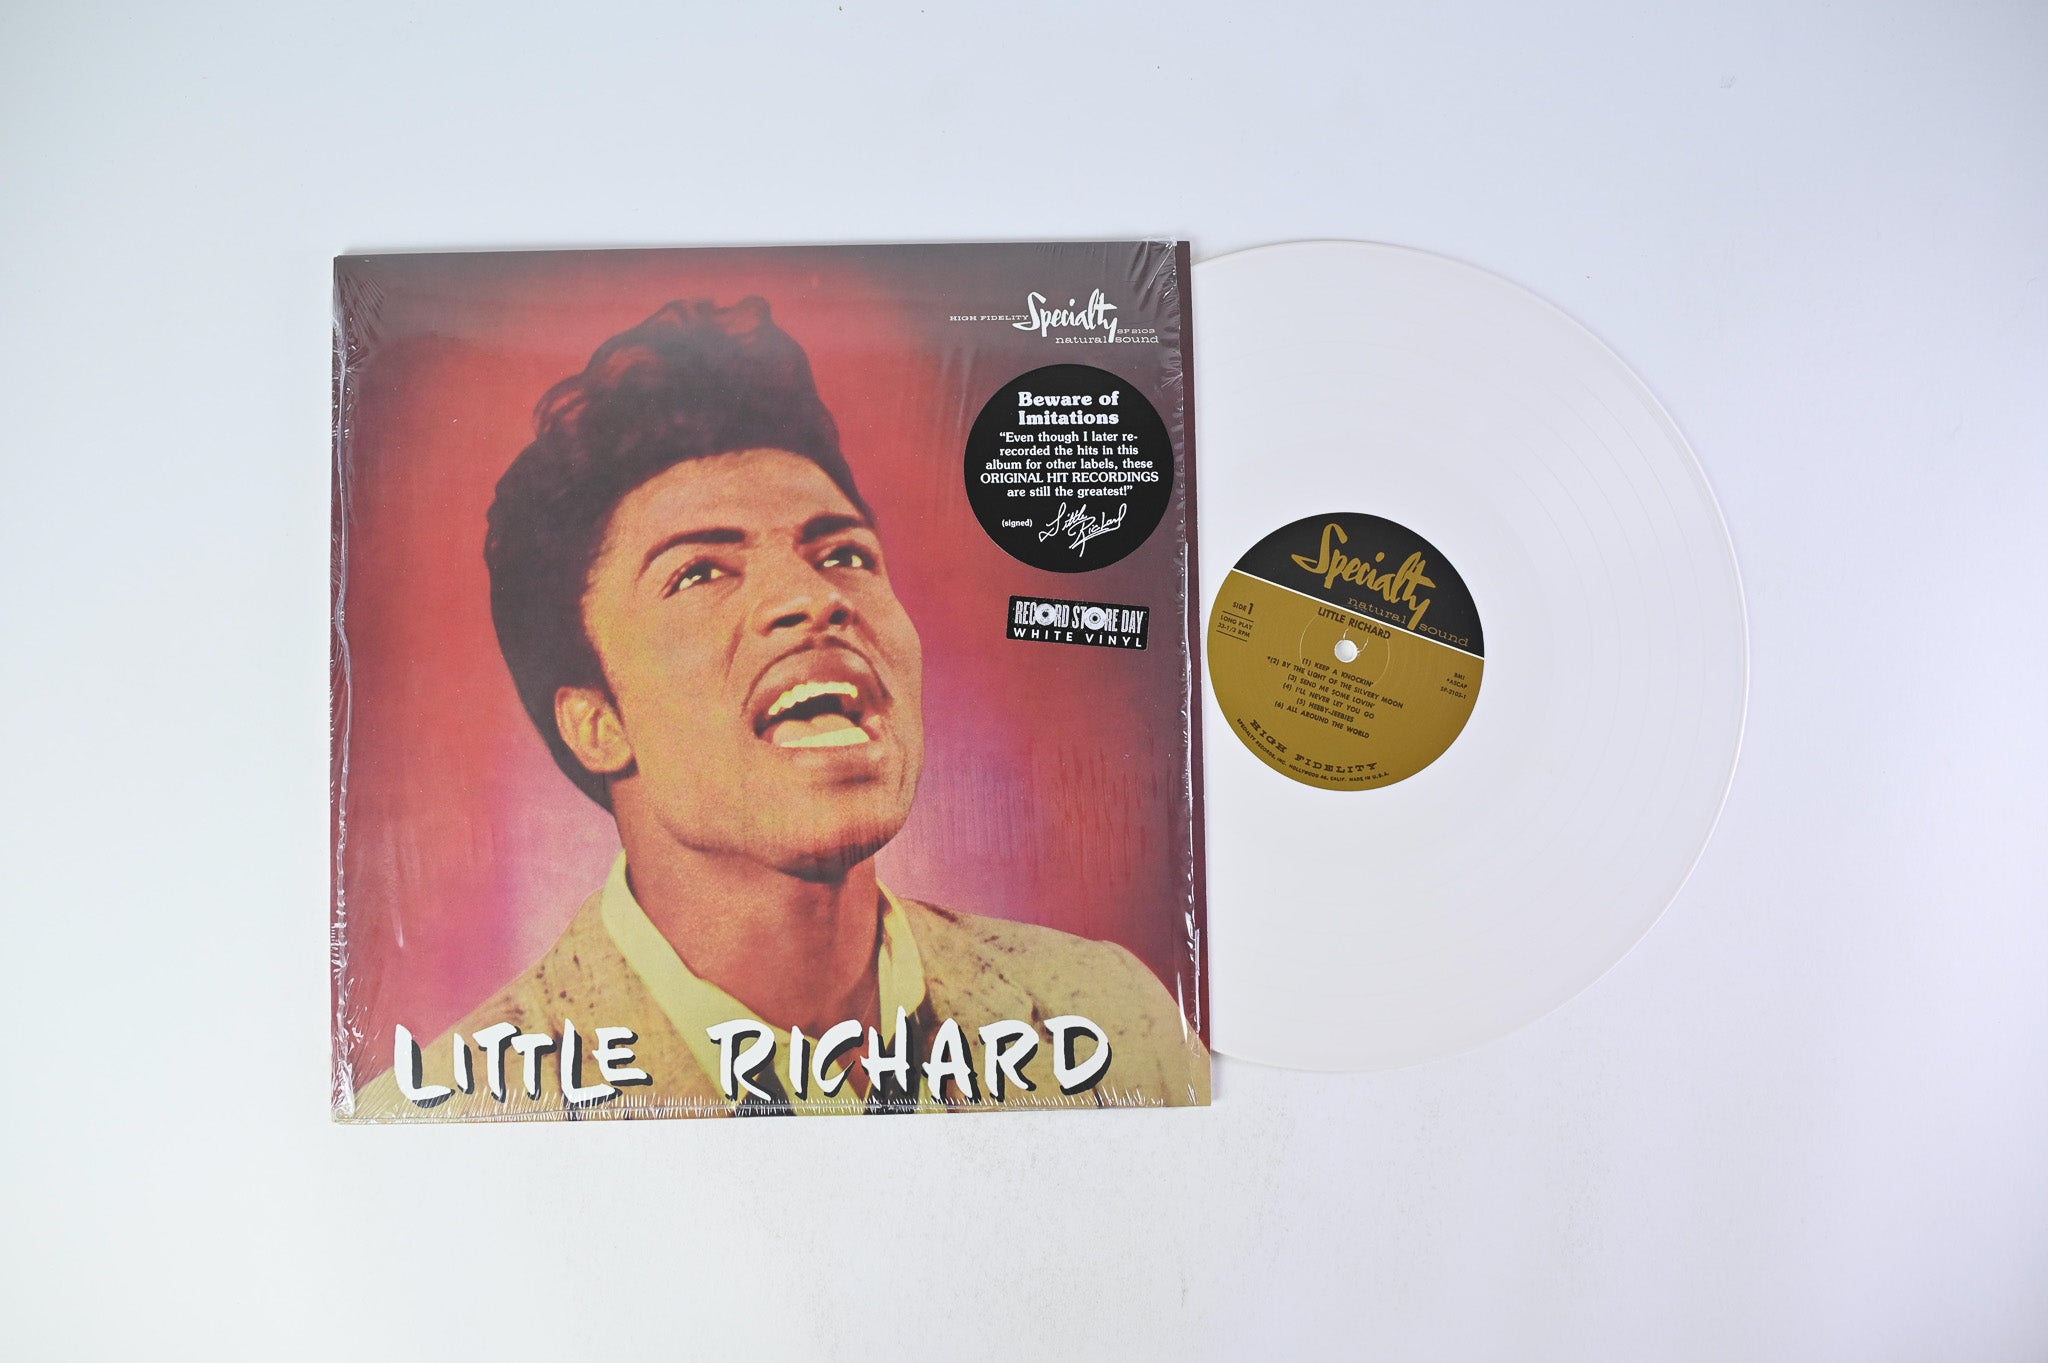 Little Richard - Little Richard on Specialty RSD BF 2014 White Vinyl Reissue